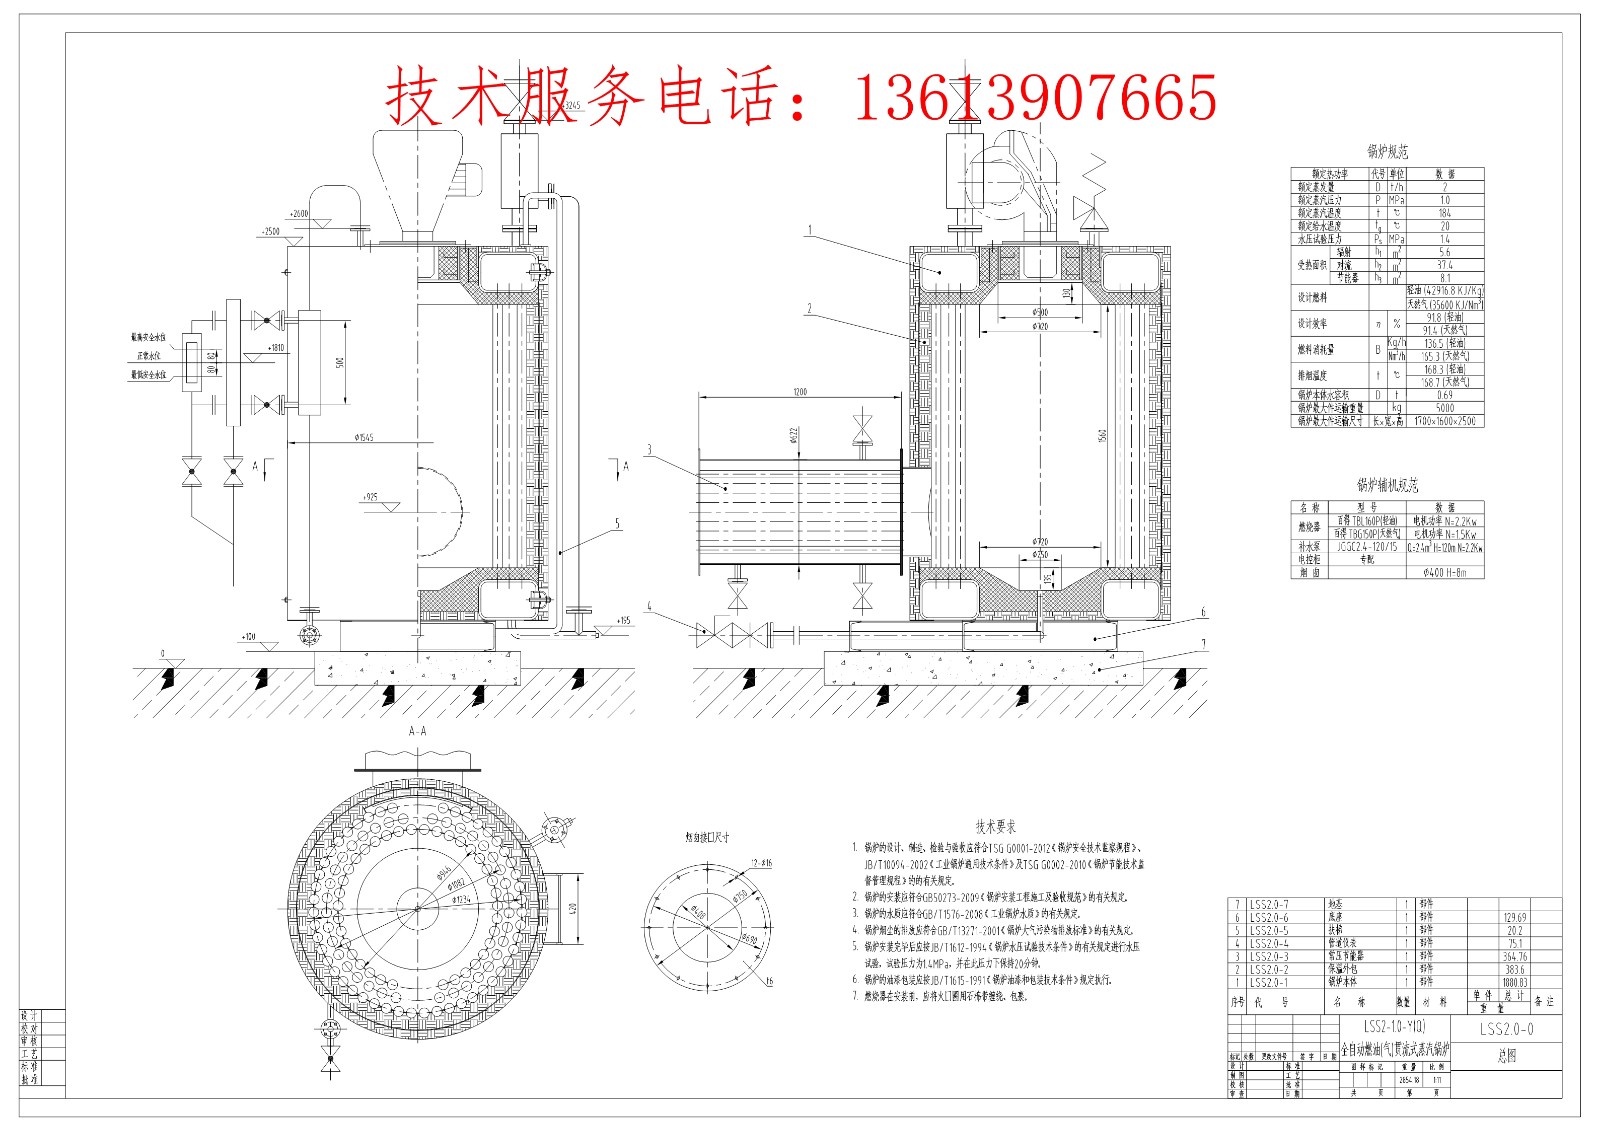 LSS2-1.0-Y(Q)贯流蒸汽锅炉图纸介绍